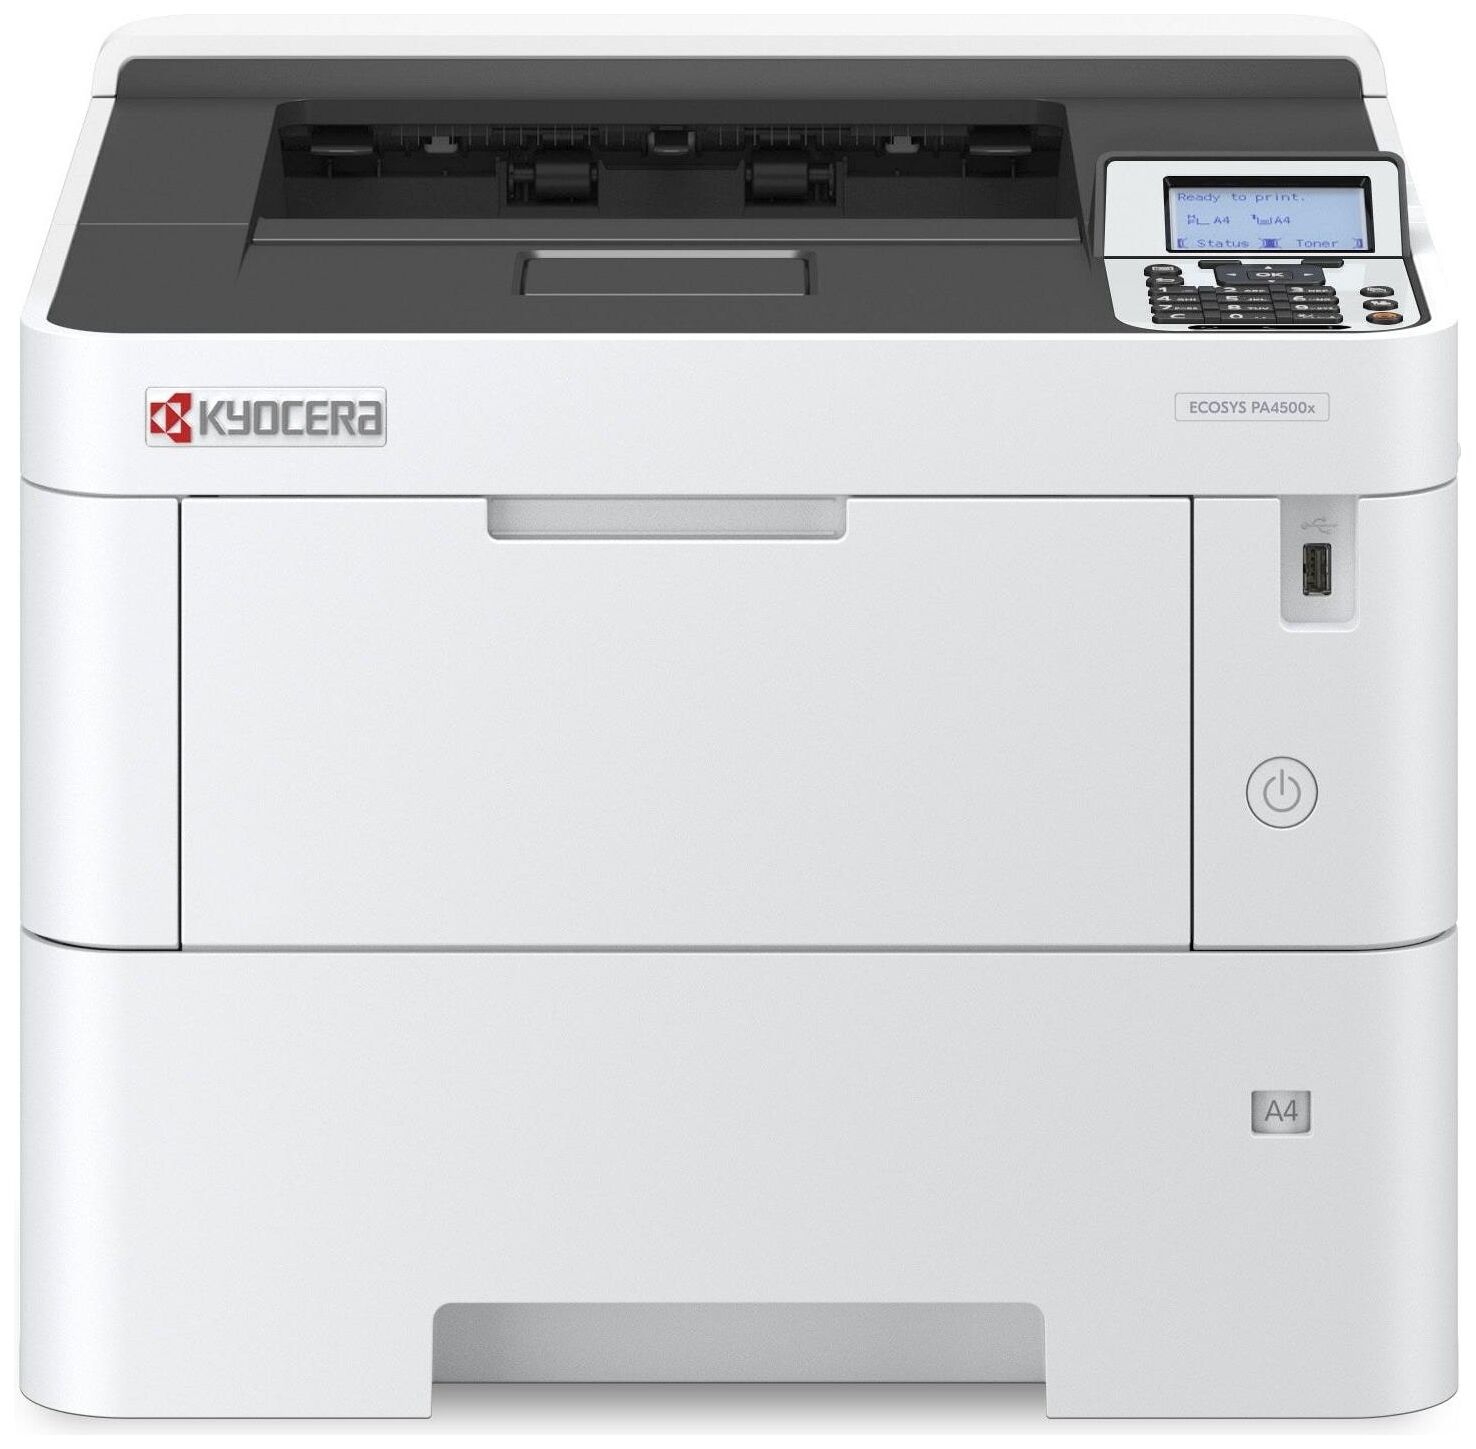 Принтер Kyocera Kyocera ECOSYS PA4500x 110C0Y3NL0/A4 черно-белый/печать Лазерный 1200x1200dpi 47стр.мин/ Сетевой интерфе